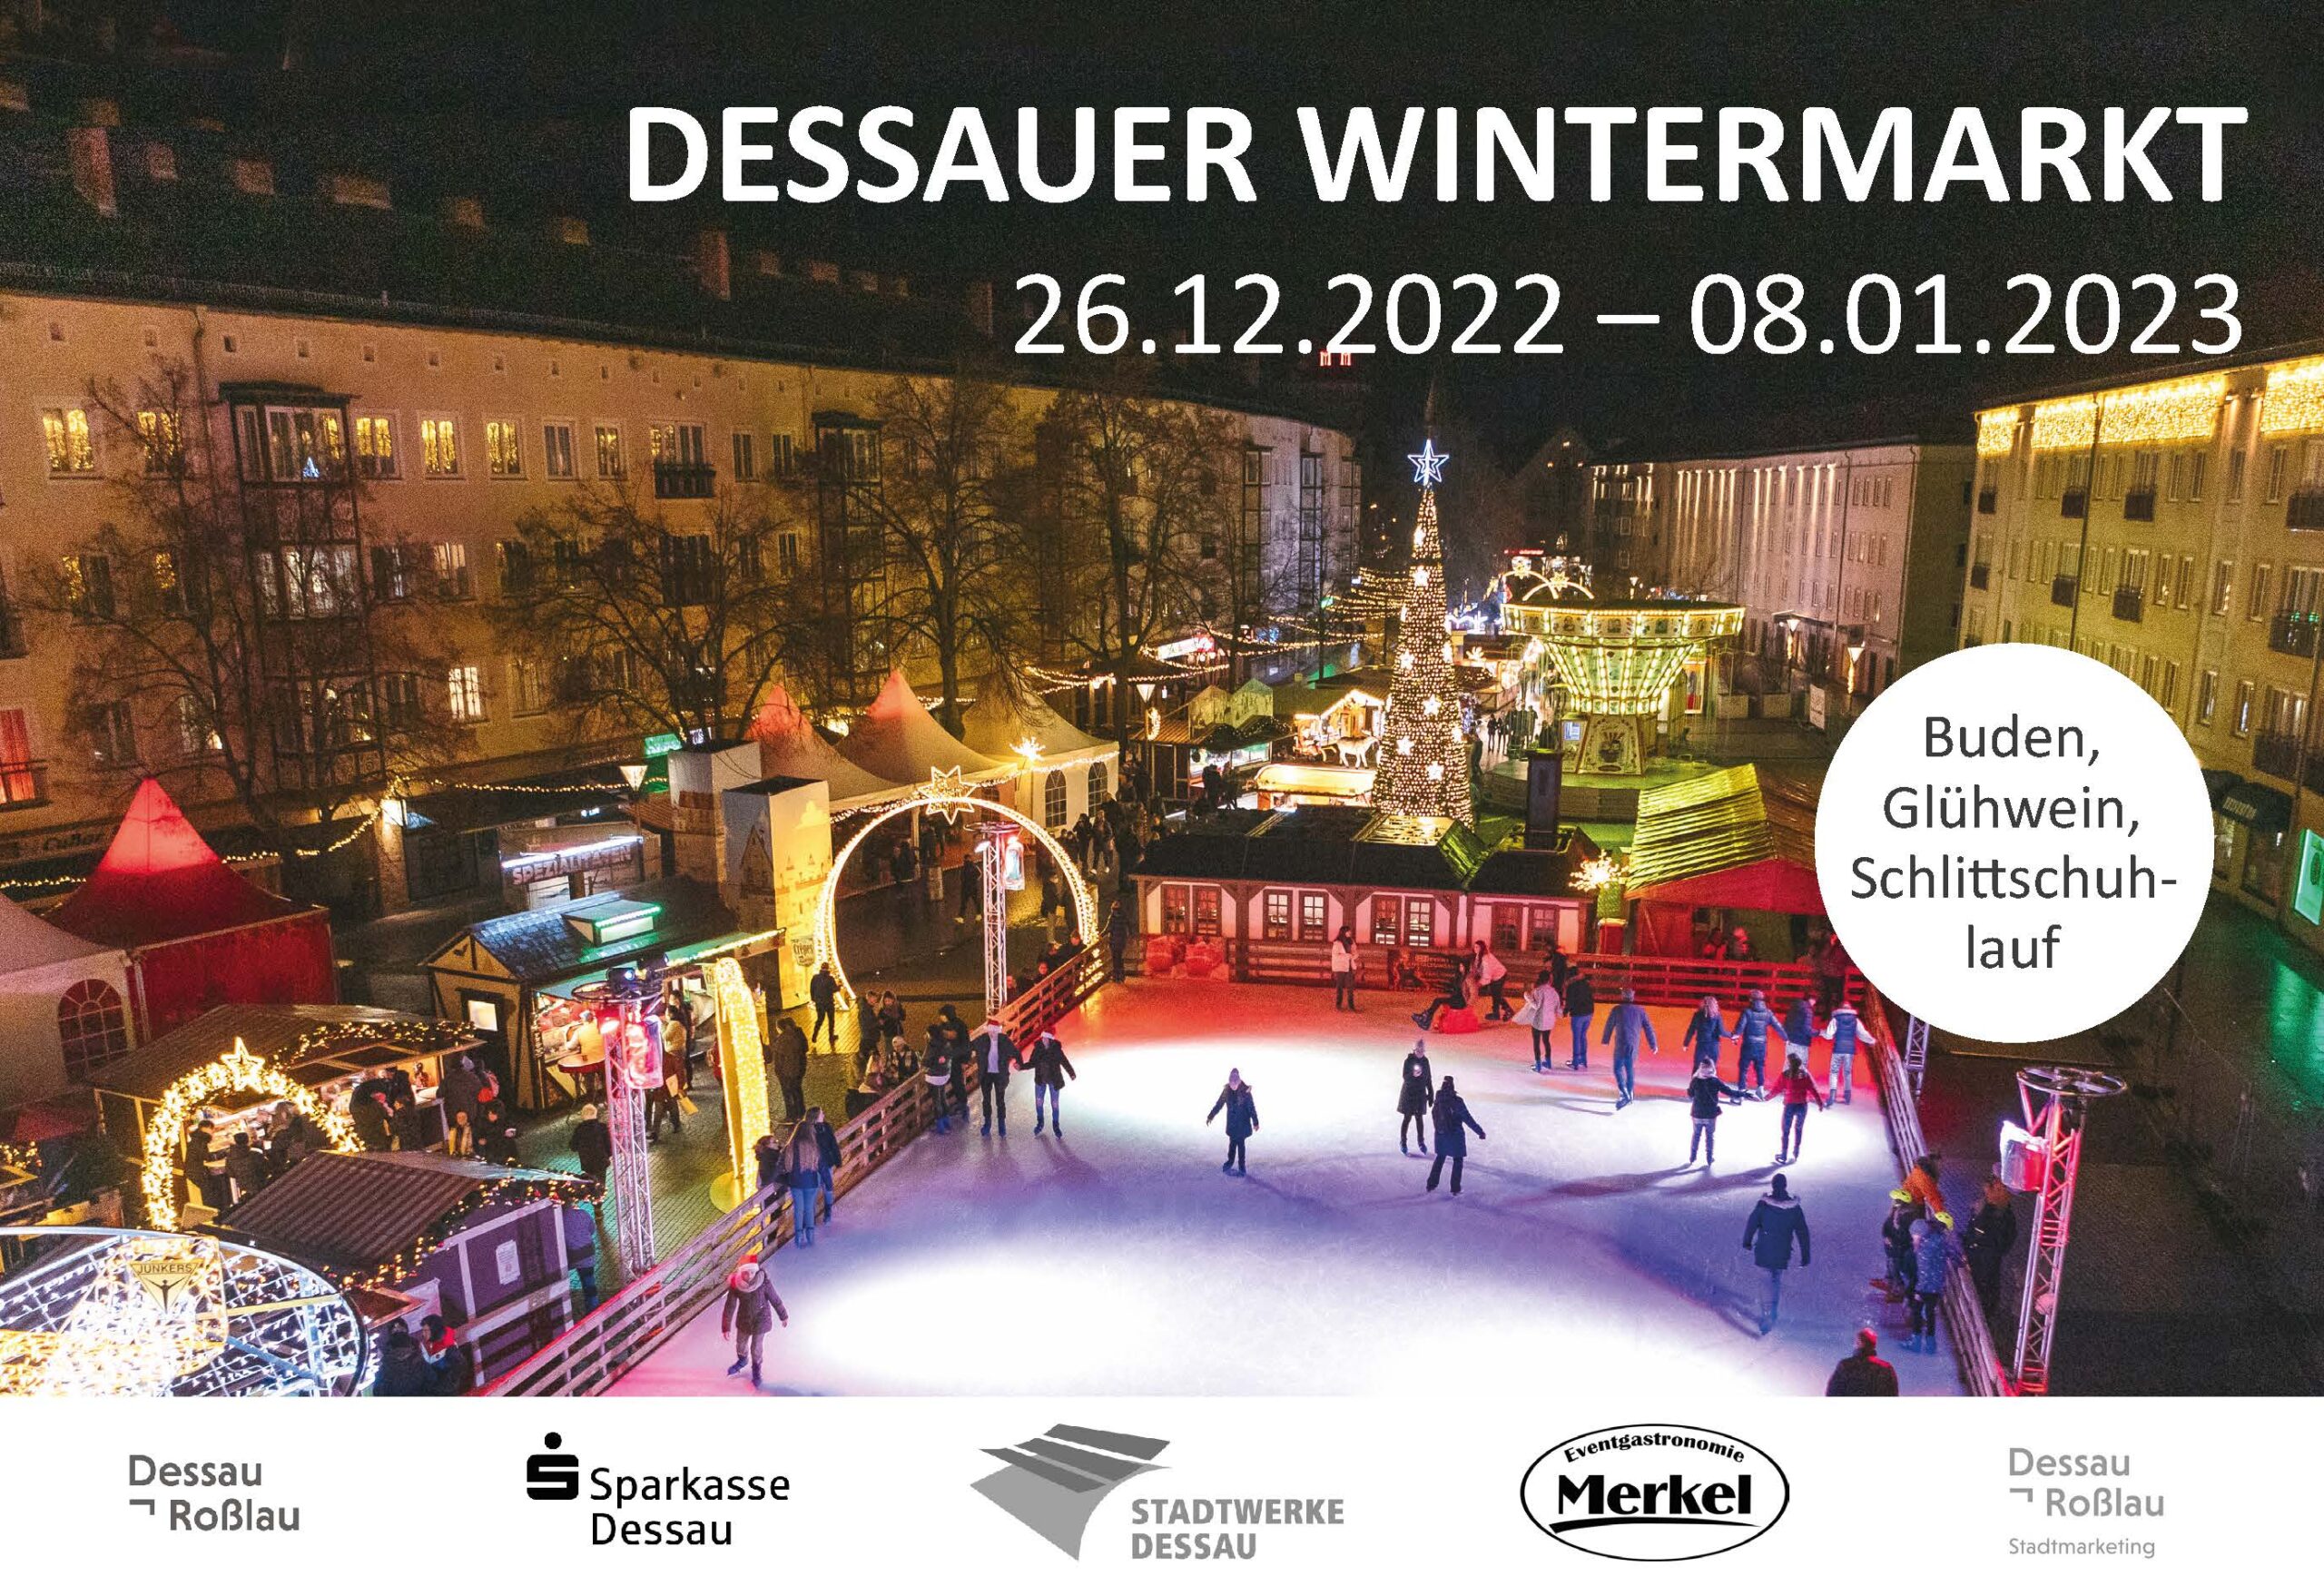 Dessauer Wintermarkt